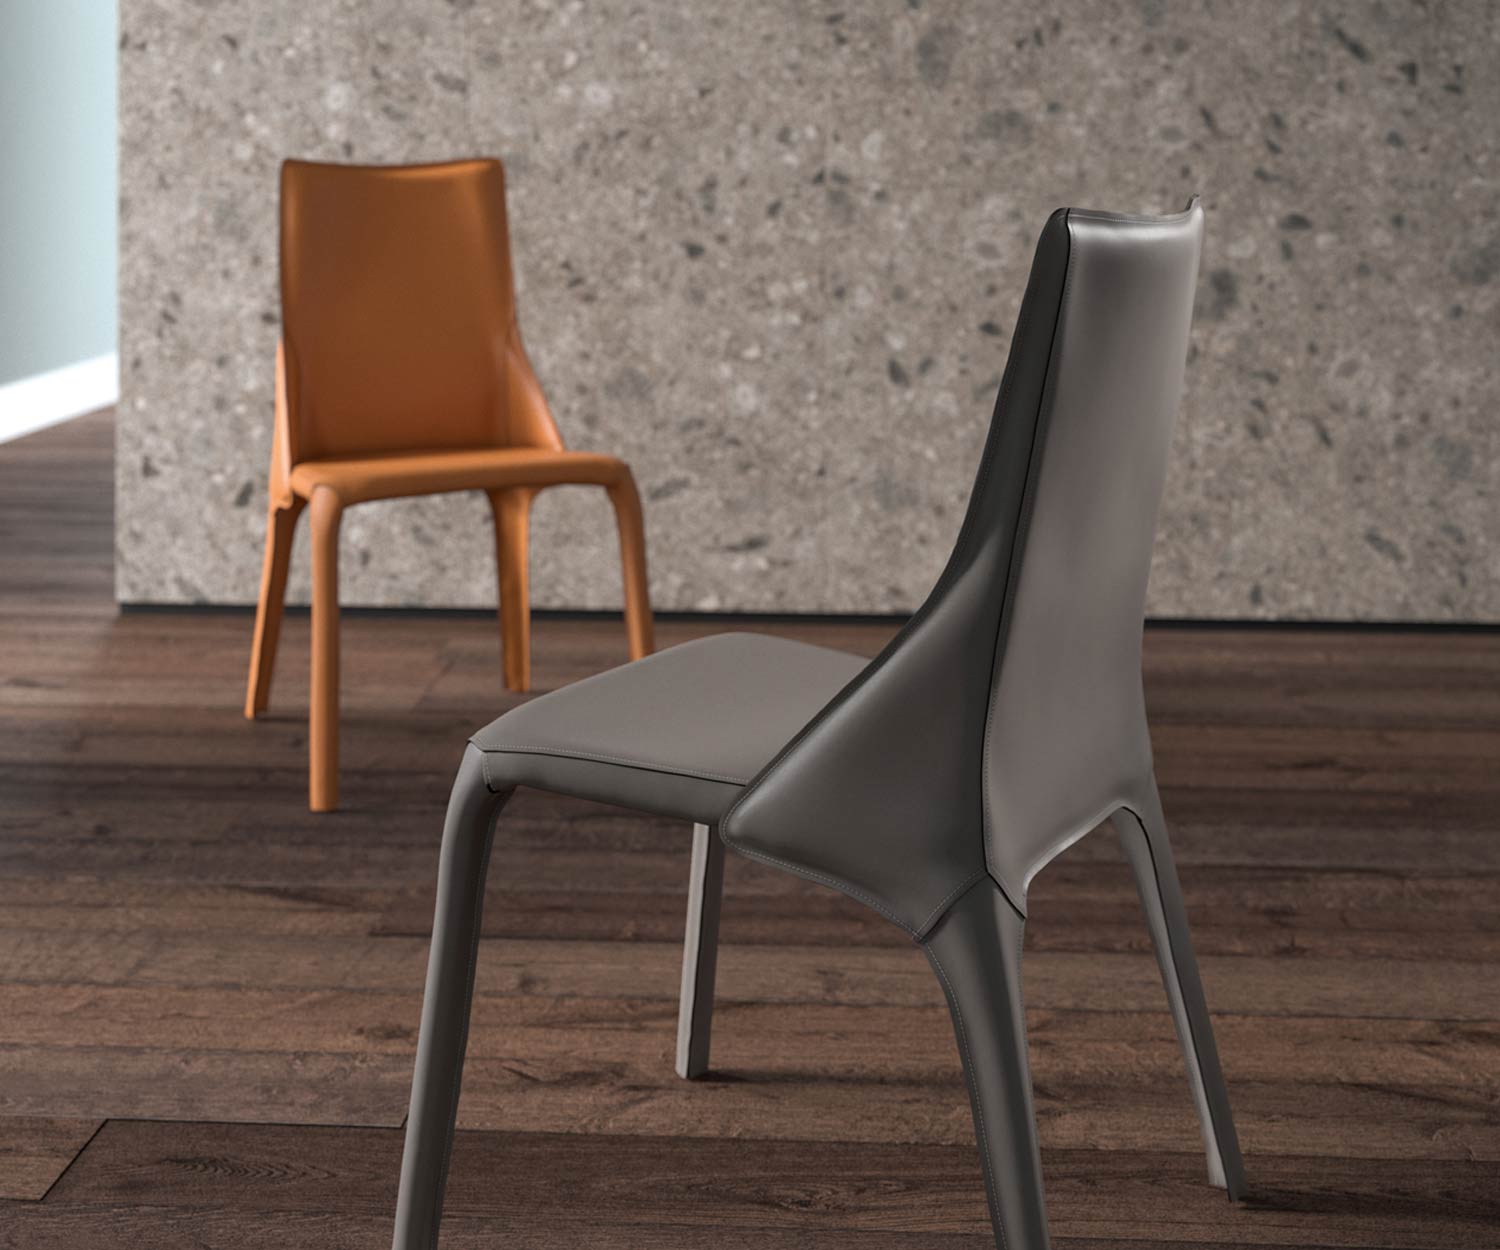 Sedia di design in pelle due sedie in pelle in dettaglio nei colori cognac e grigio scuro